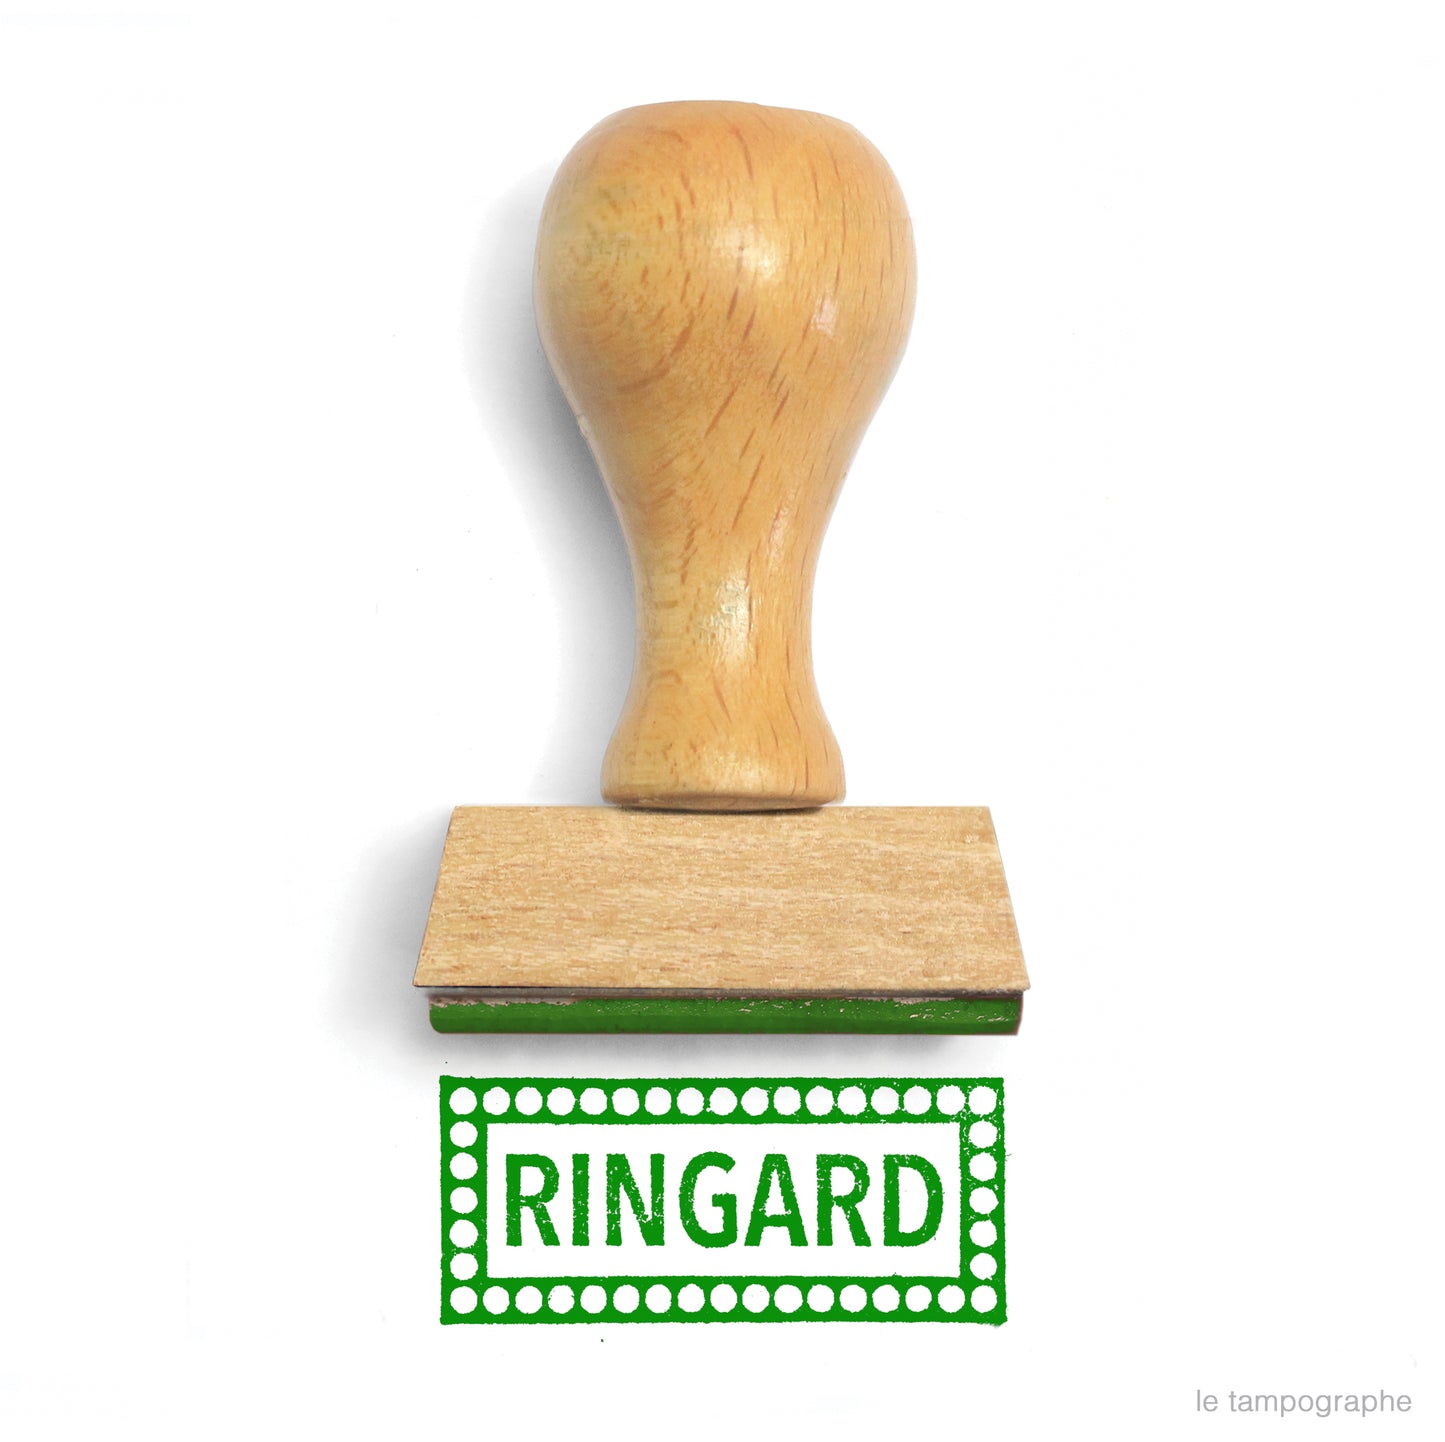 Ringard